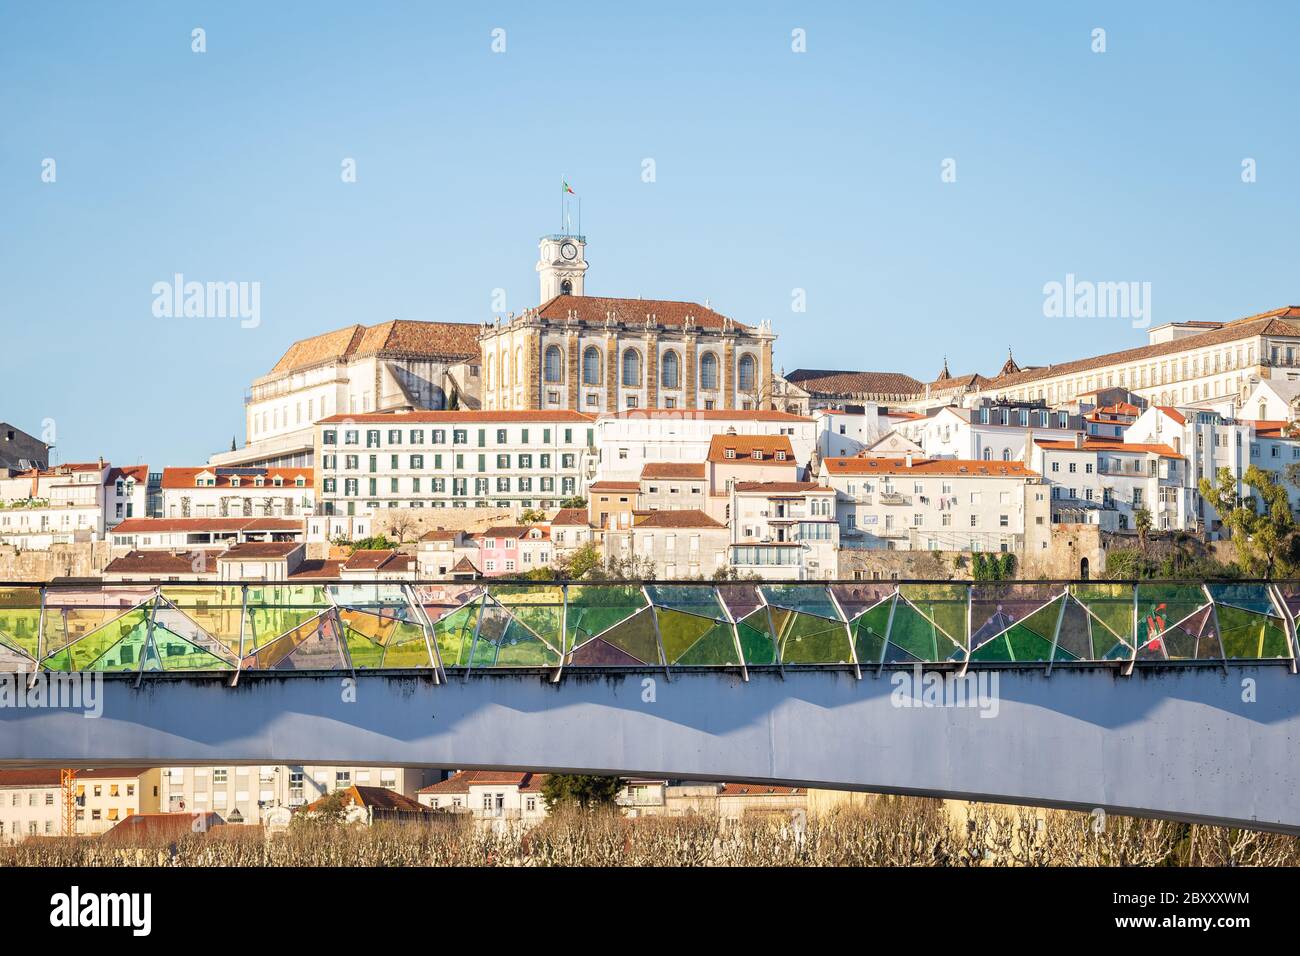 Historisches Stadtbild von Coimbra mit Universität auf dem Hügel, Portugal Stockfoto